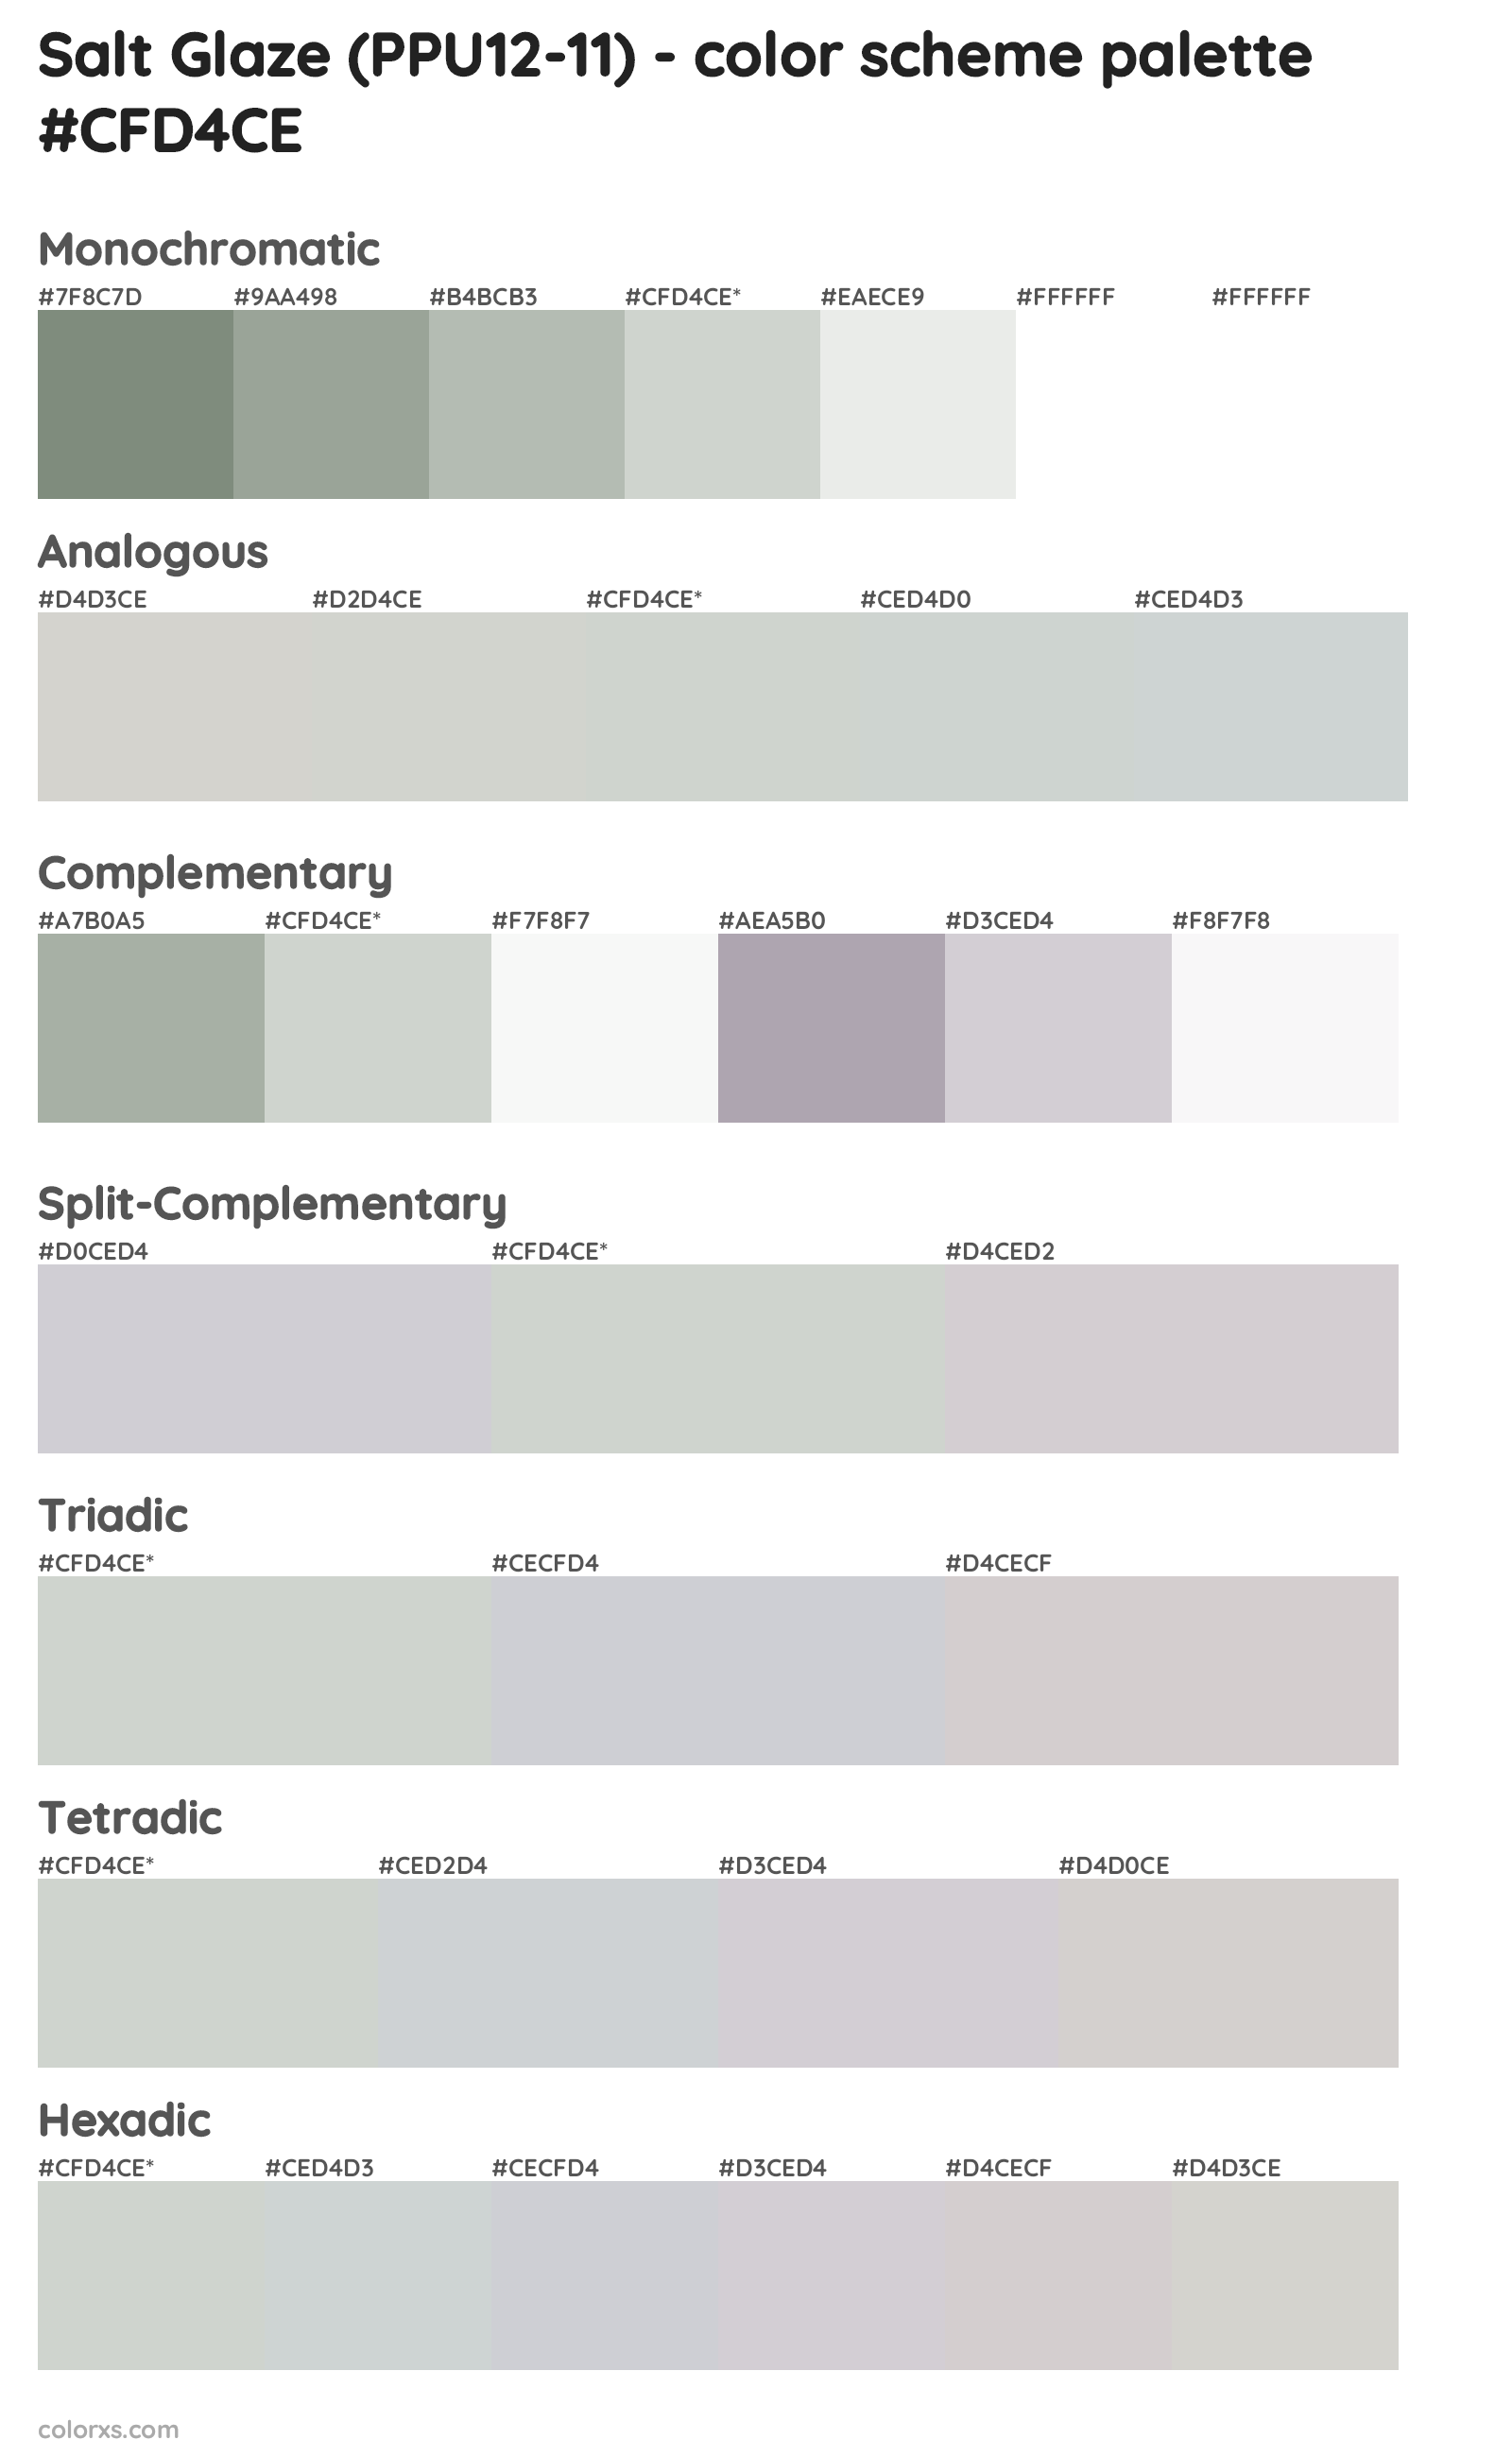 Salt Glaze (PPU12-11) Color Scheme Palettes